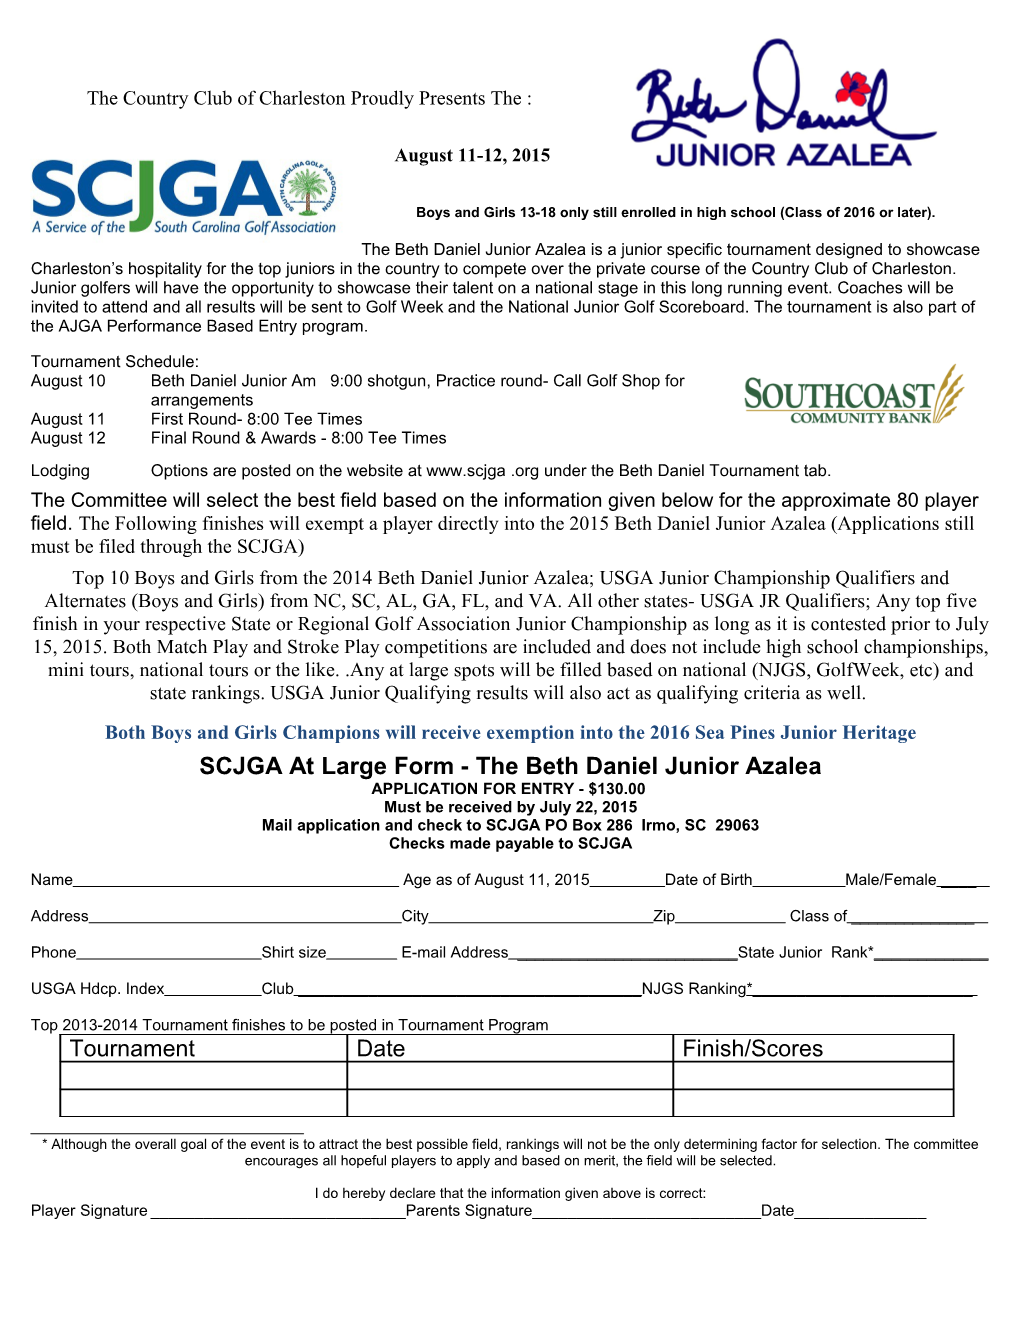 Thornblade Club and the South Carolina Junior Golf Association